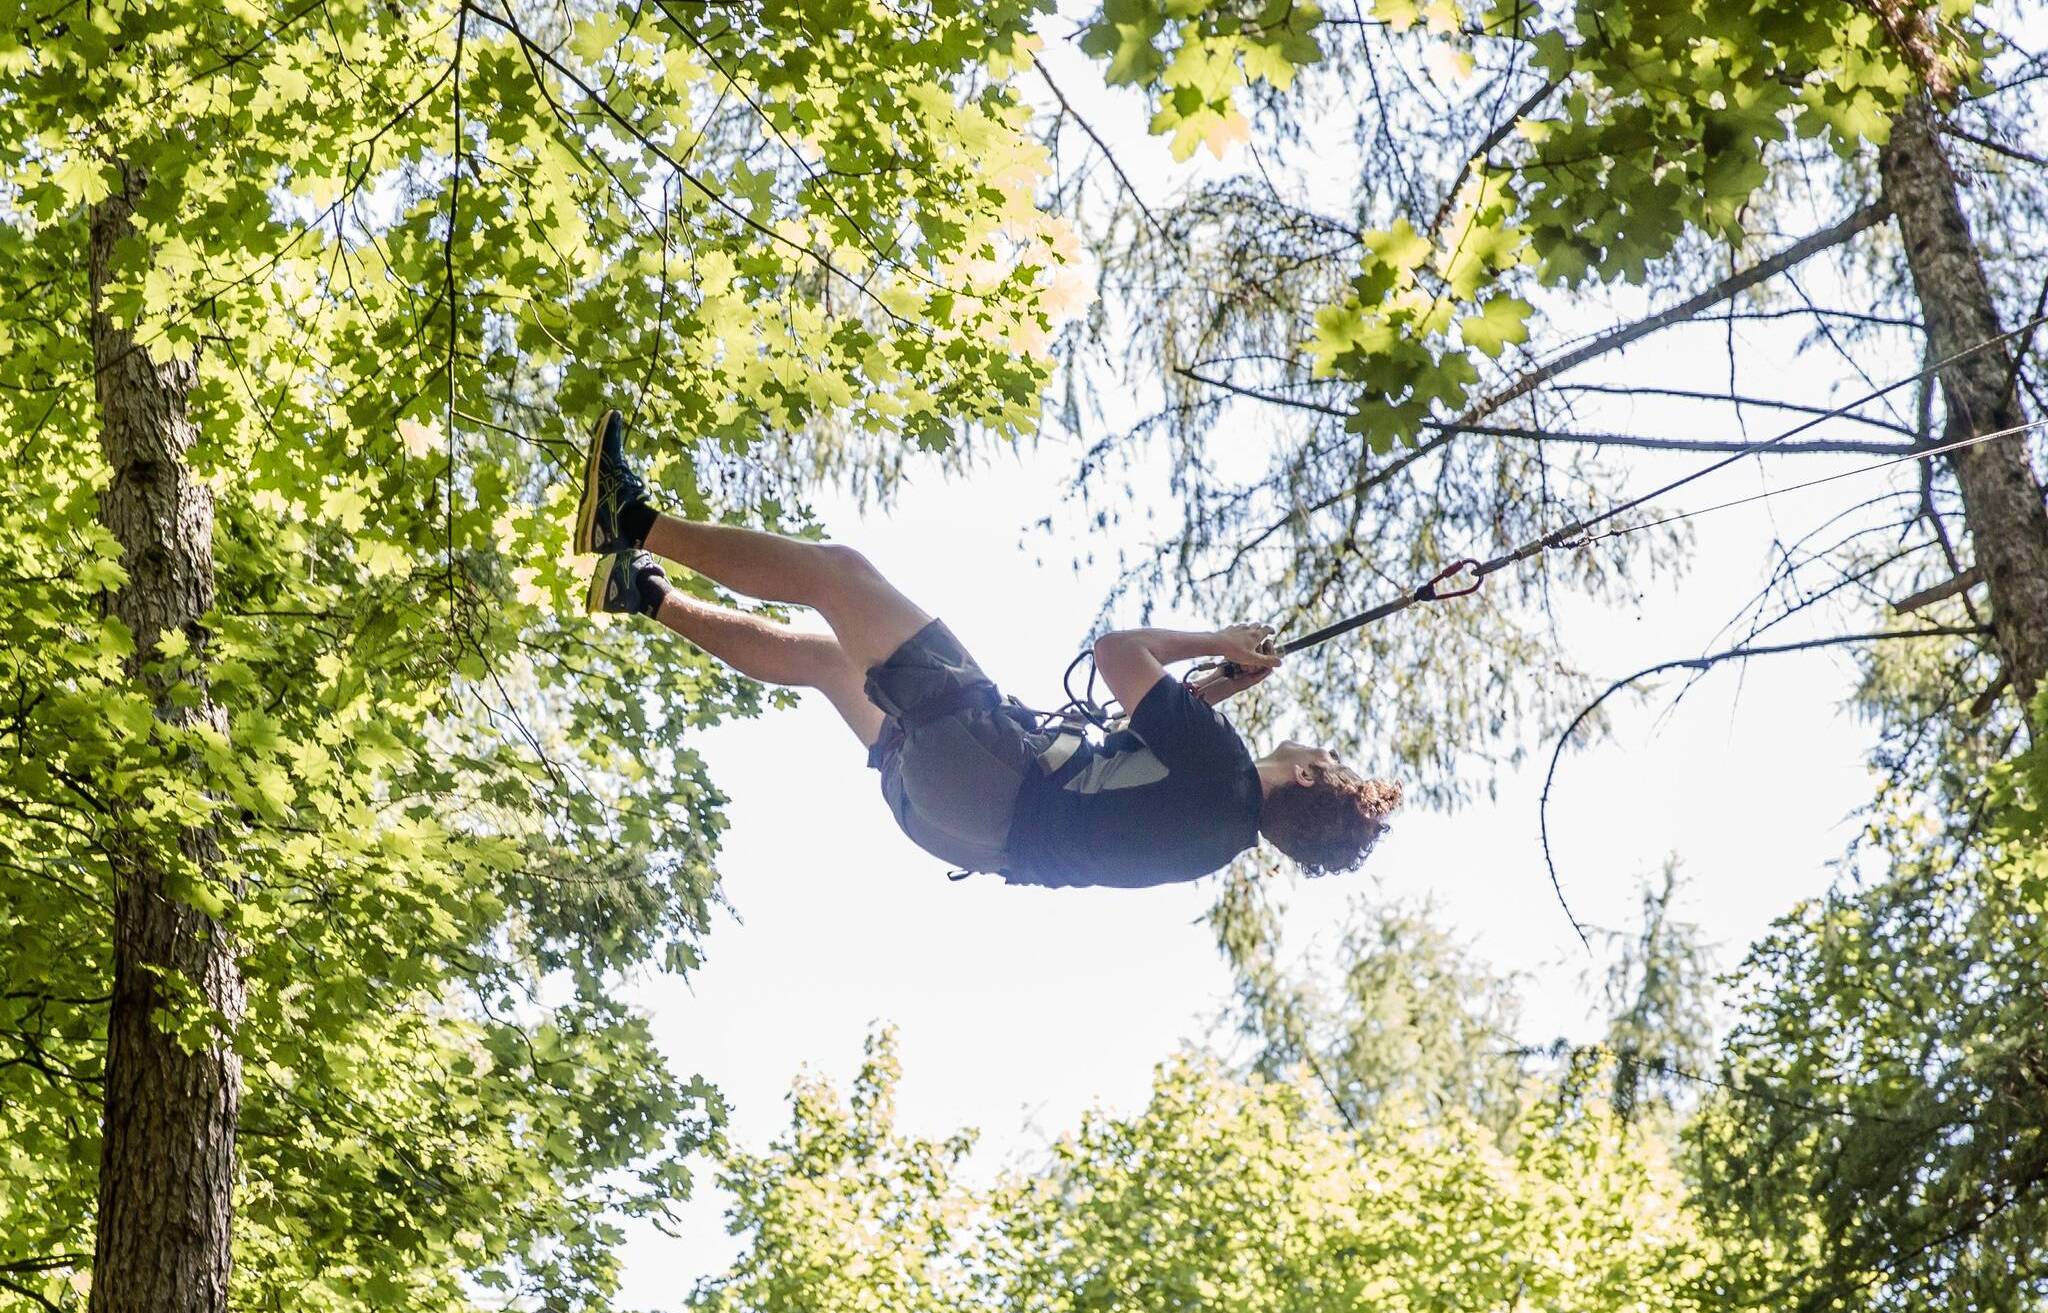 Sport und Action im sommerlichen neanderland: Baden, klettern, ins Gelände!